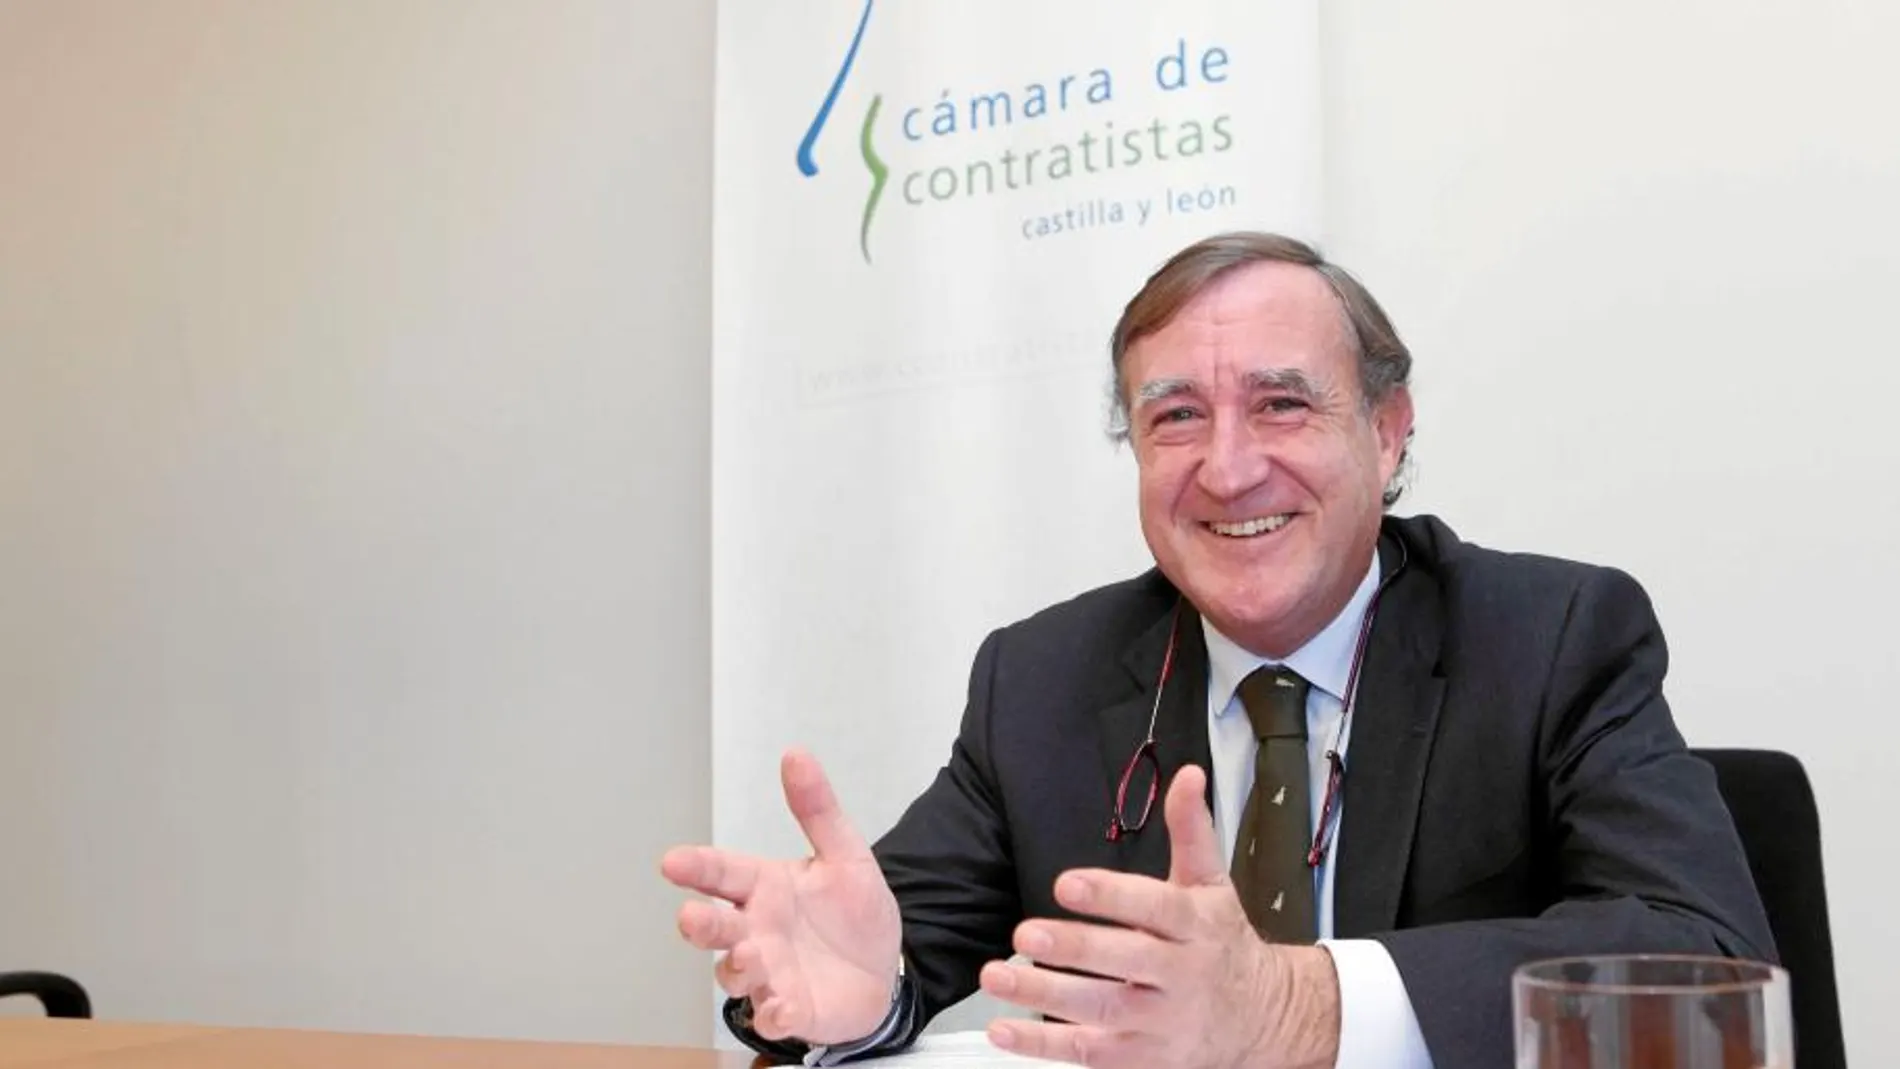 El nuevo presidente de la Cámara de Contratistas de Castilla y León, Enrique Pascual